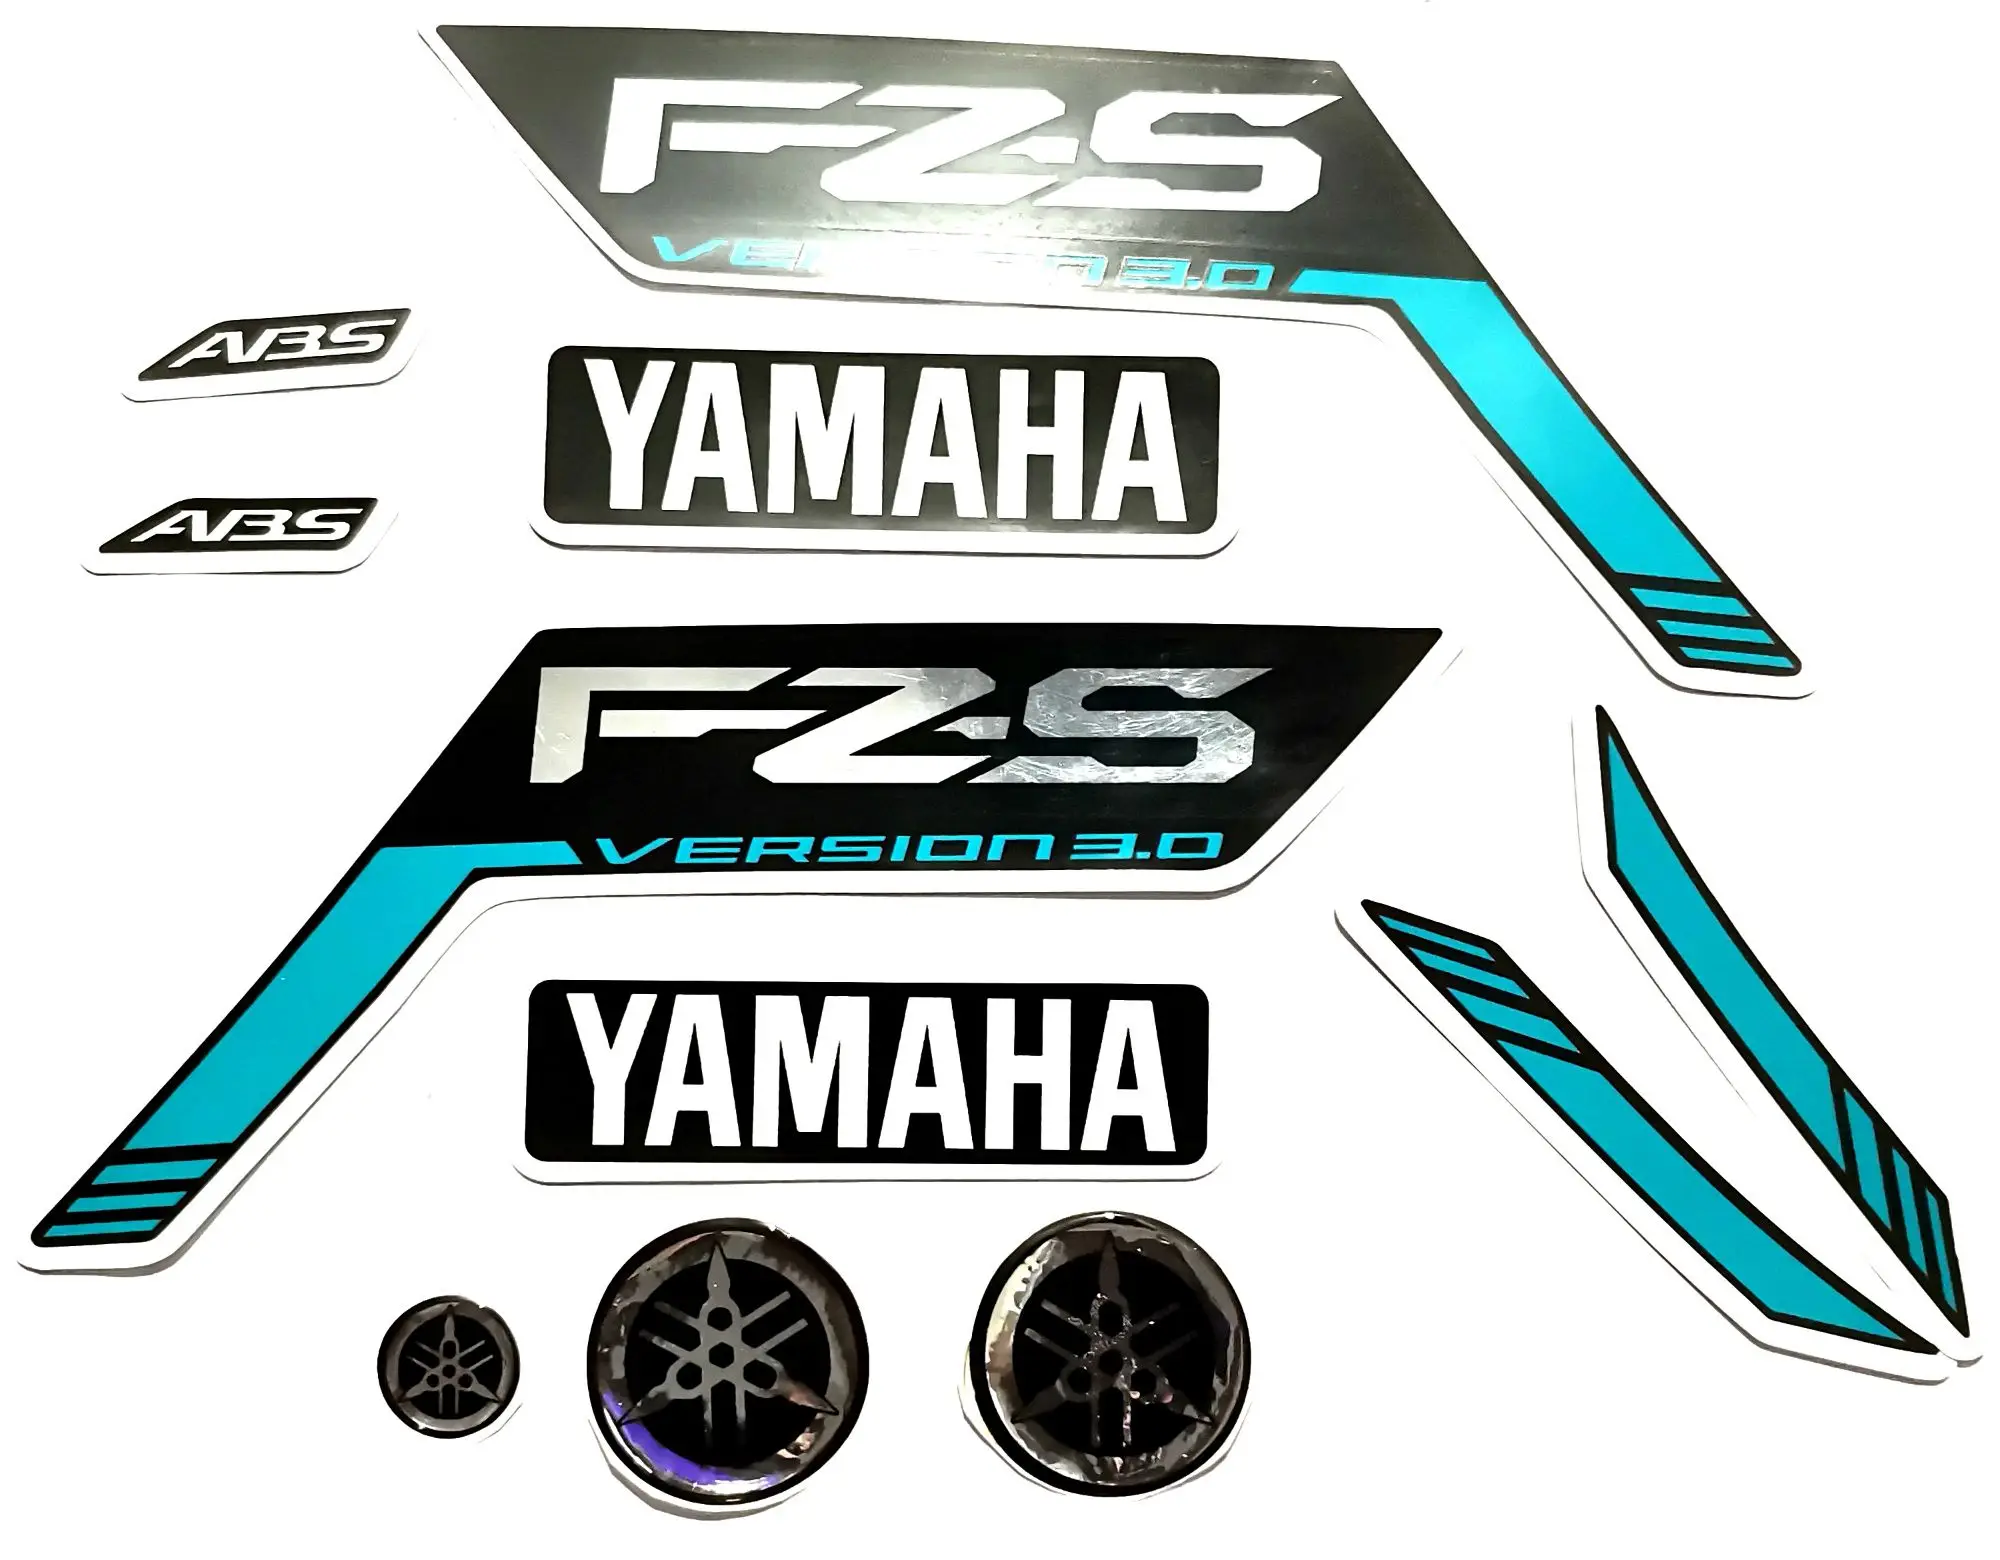 Yamaha FZ25 VR46 Edition by DS Design (Chennai) | Yamaha bikes, Yamaha, Yamaha  fz bike